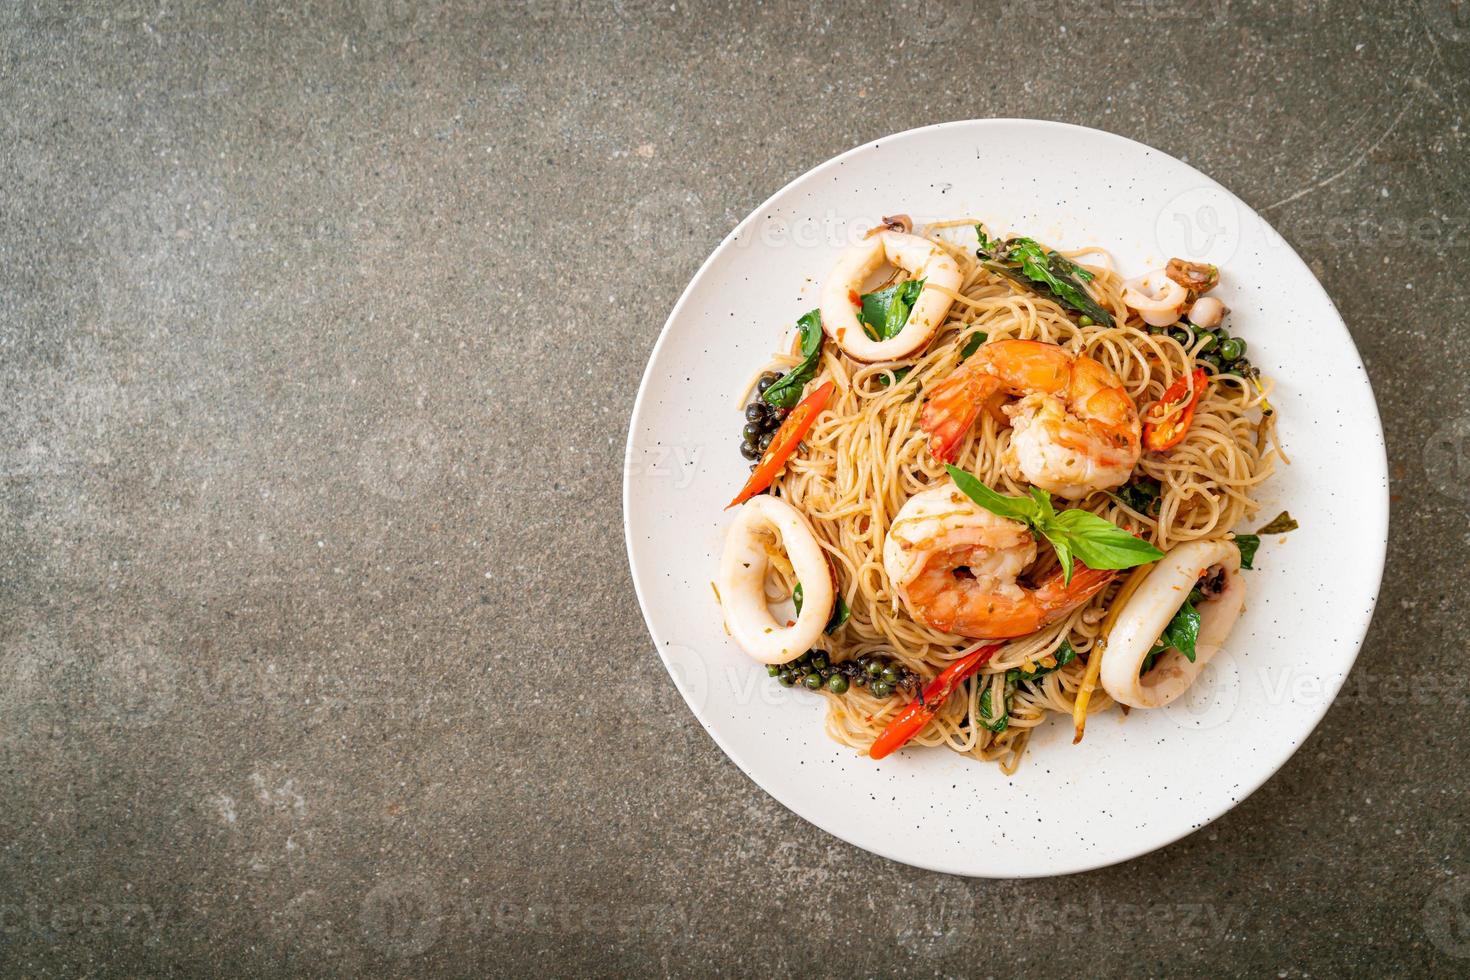 fideos chinos salteados con albahaca, chile, camarones y calamares - estilo de comida asiática foto